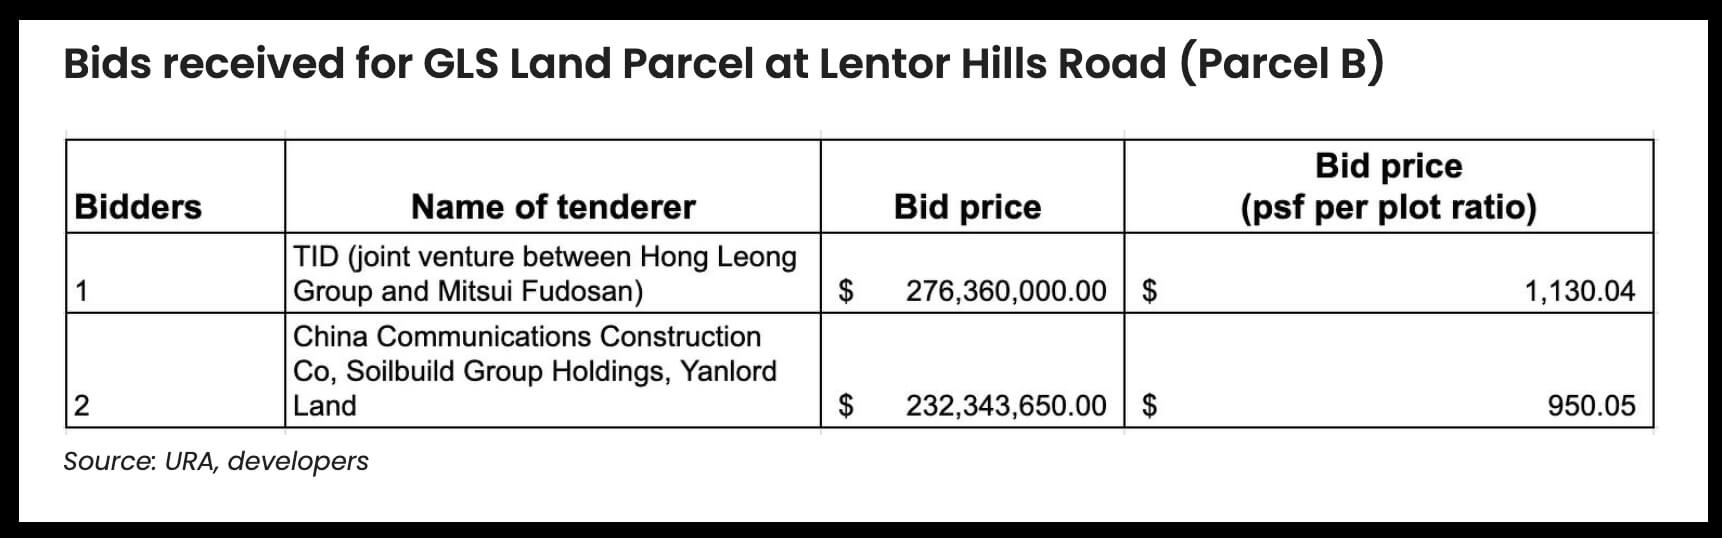 Lentor Hills Road (Parcel B) GLS tender results